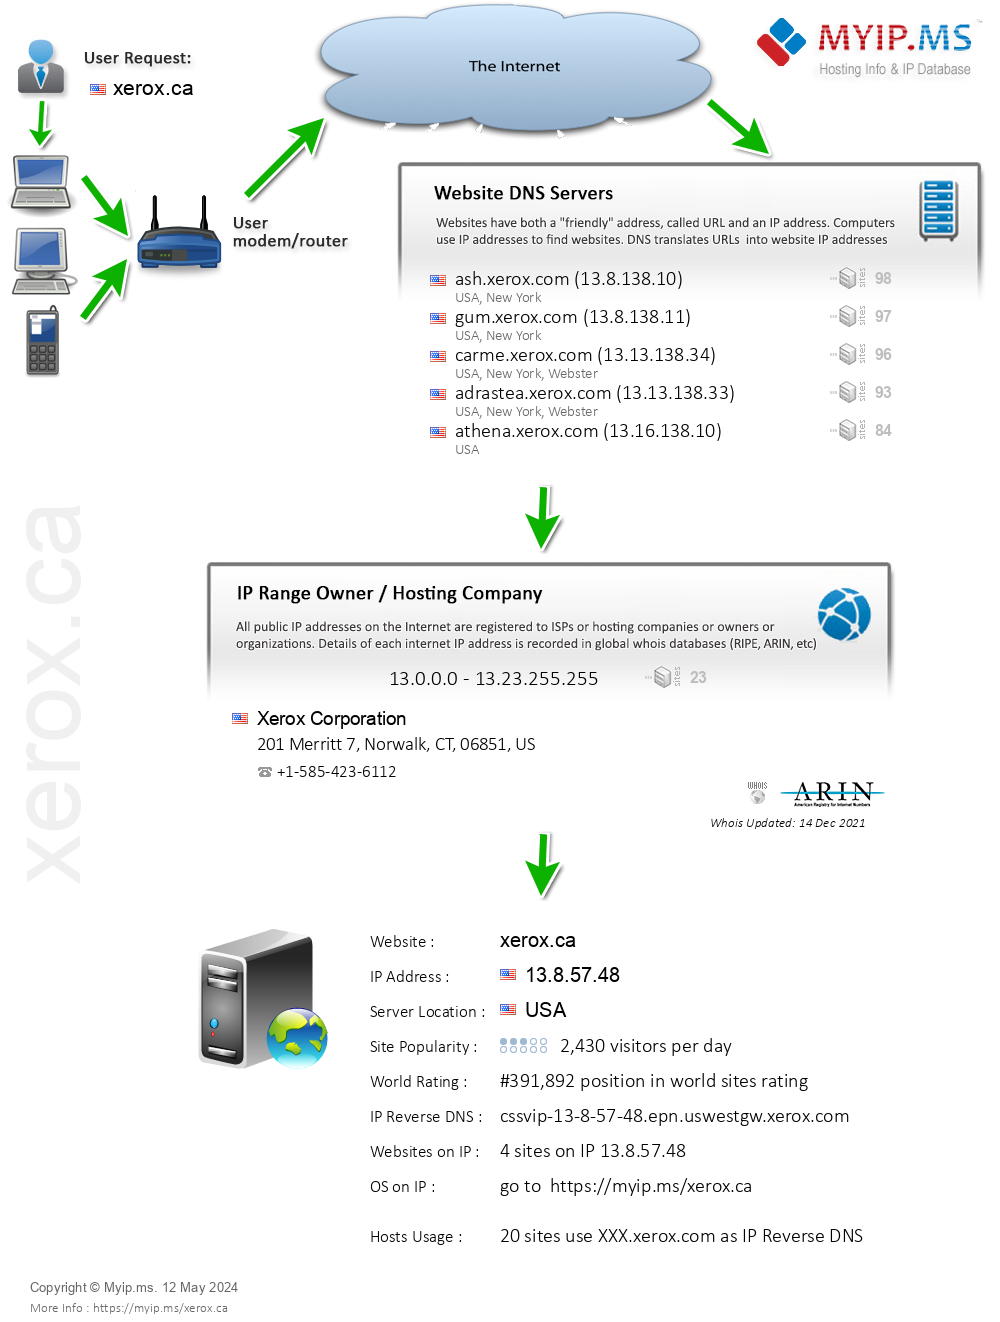 Xerox.ca - Website Hosting Visual IP Diagram